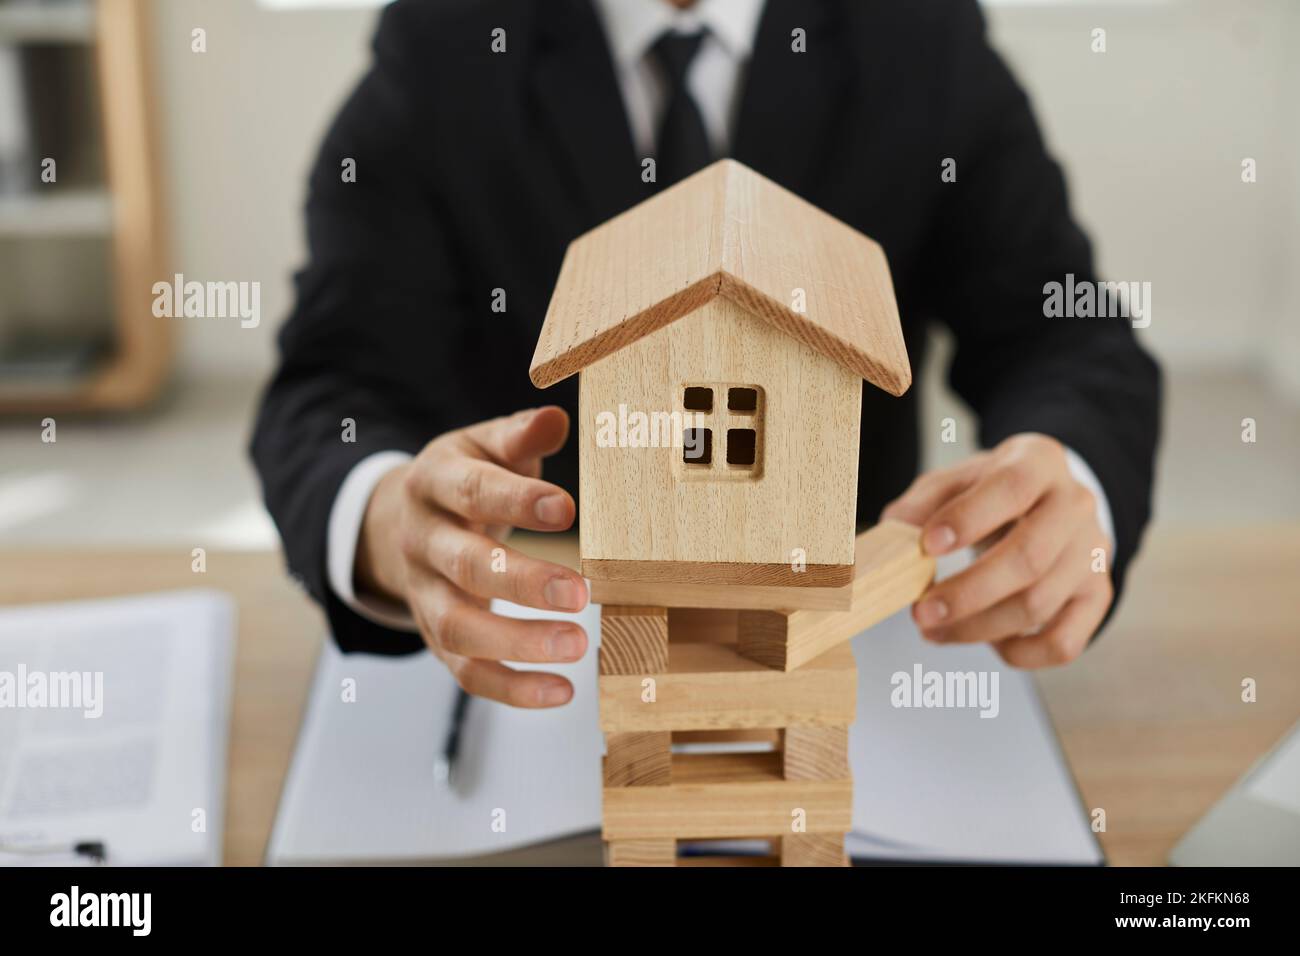 Der Mann entfernt Blöcke unter einem kleinen Holzhaus und demonstriert damit die Bedeutung der Hausversicherung. Stockfoto